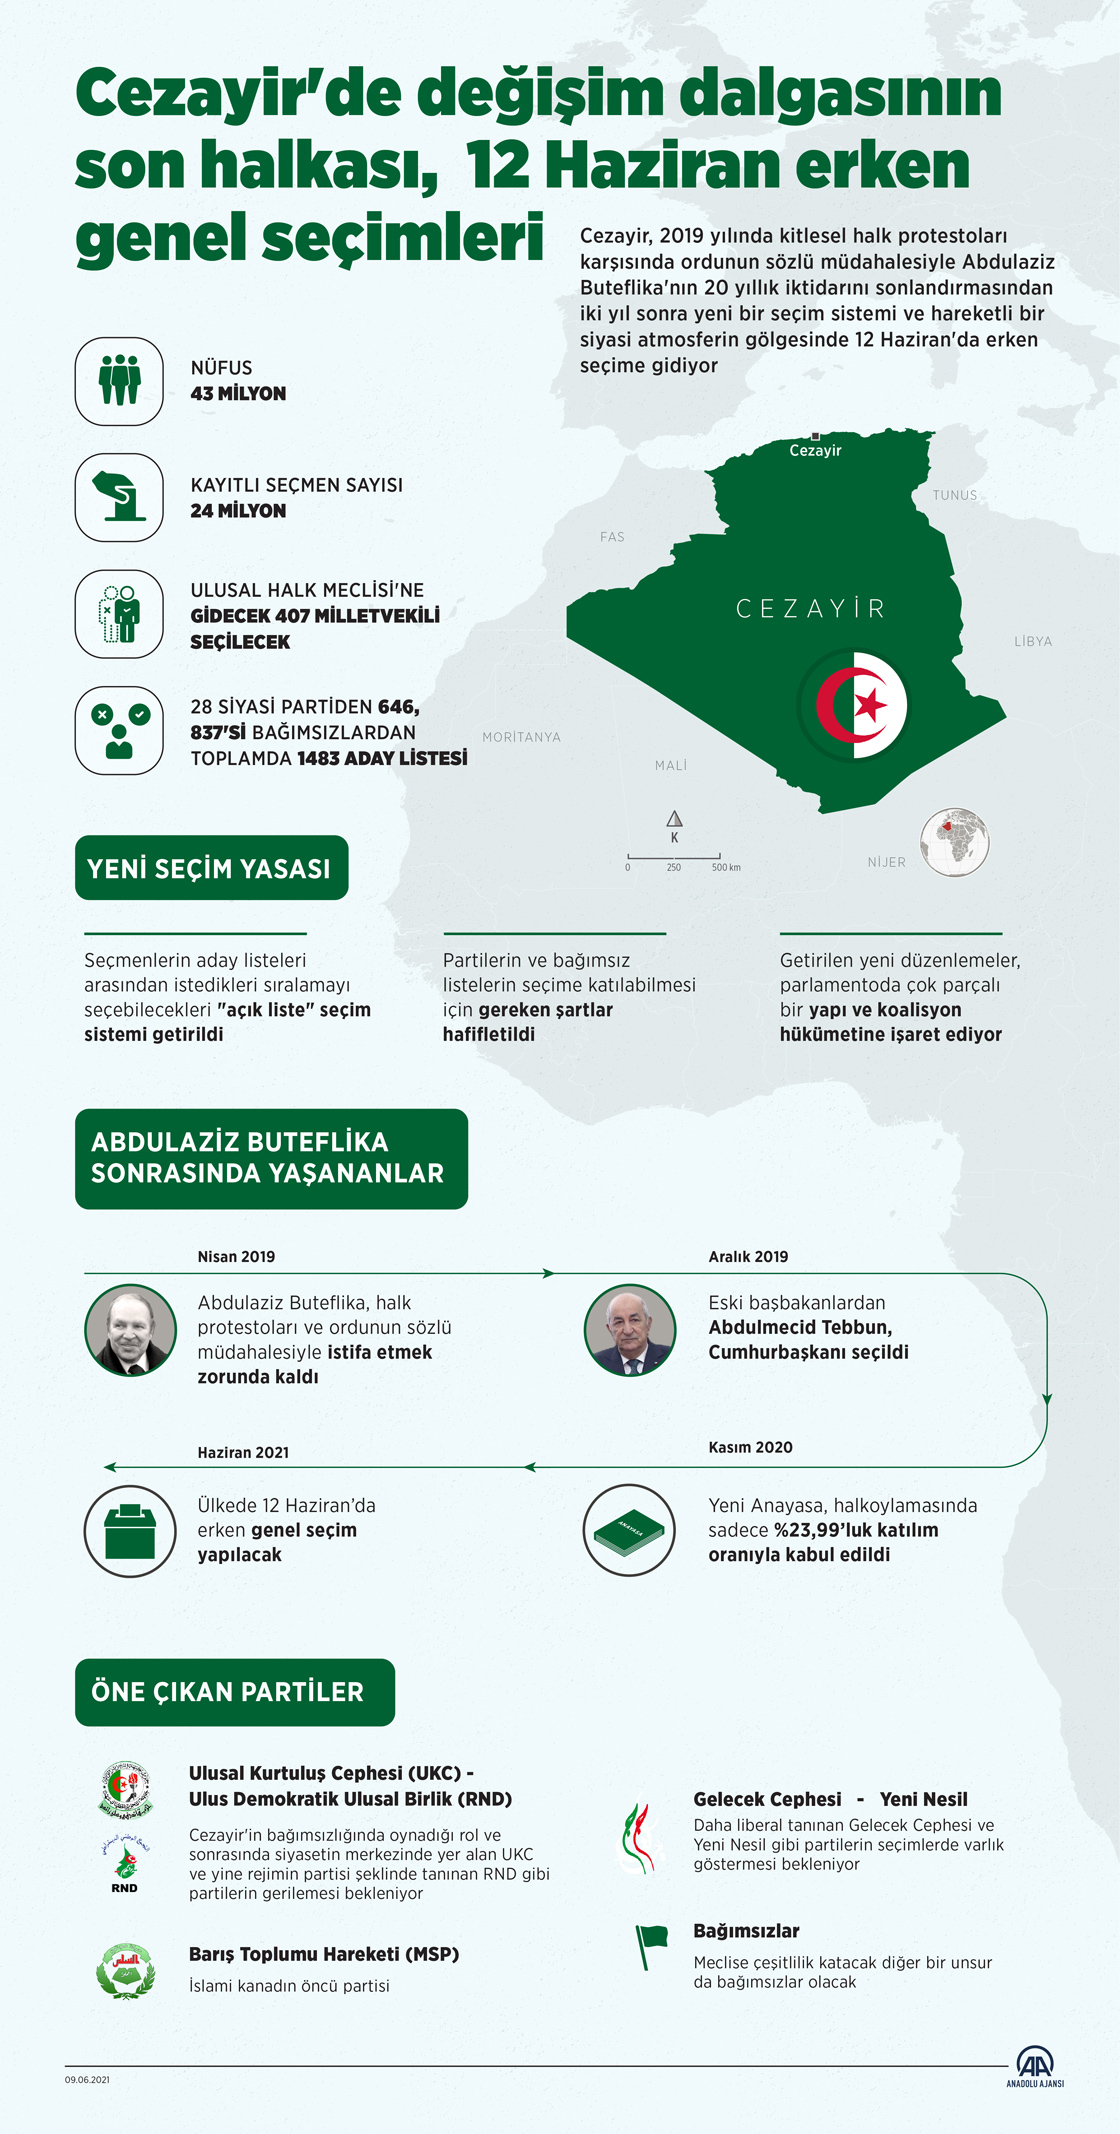 Cezayir'de değişim dalgasının son halkası, 12 Haziran erken genel seçimleri